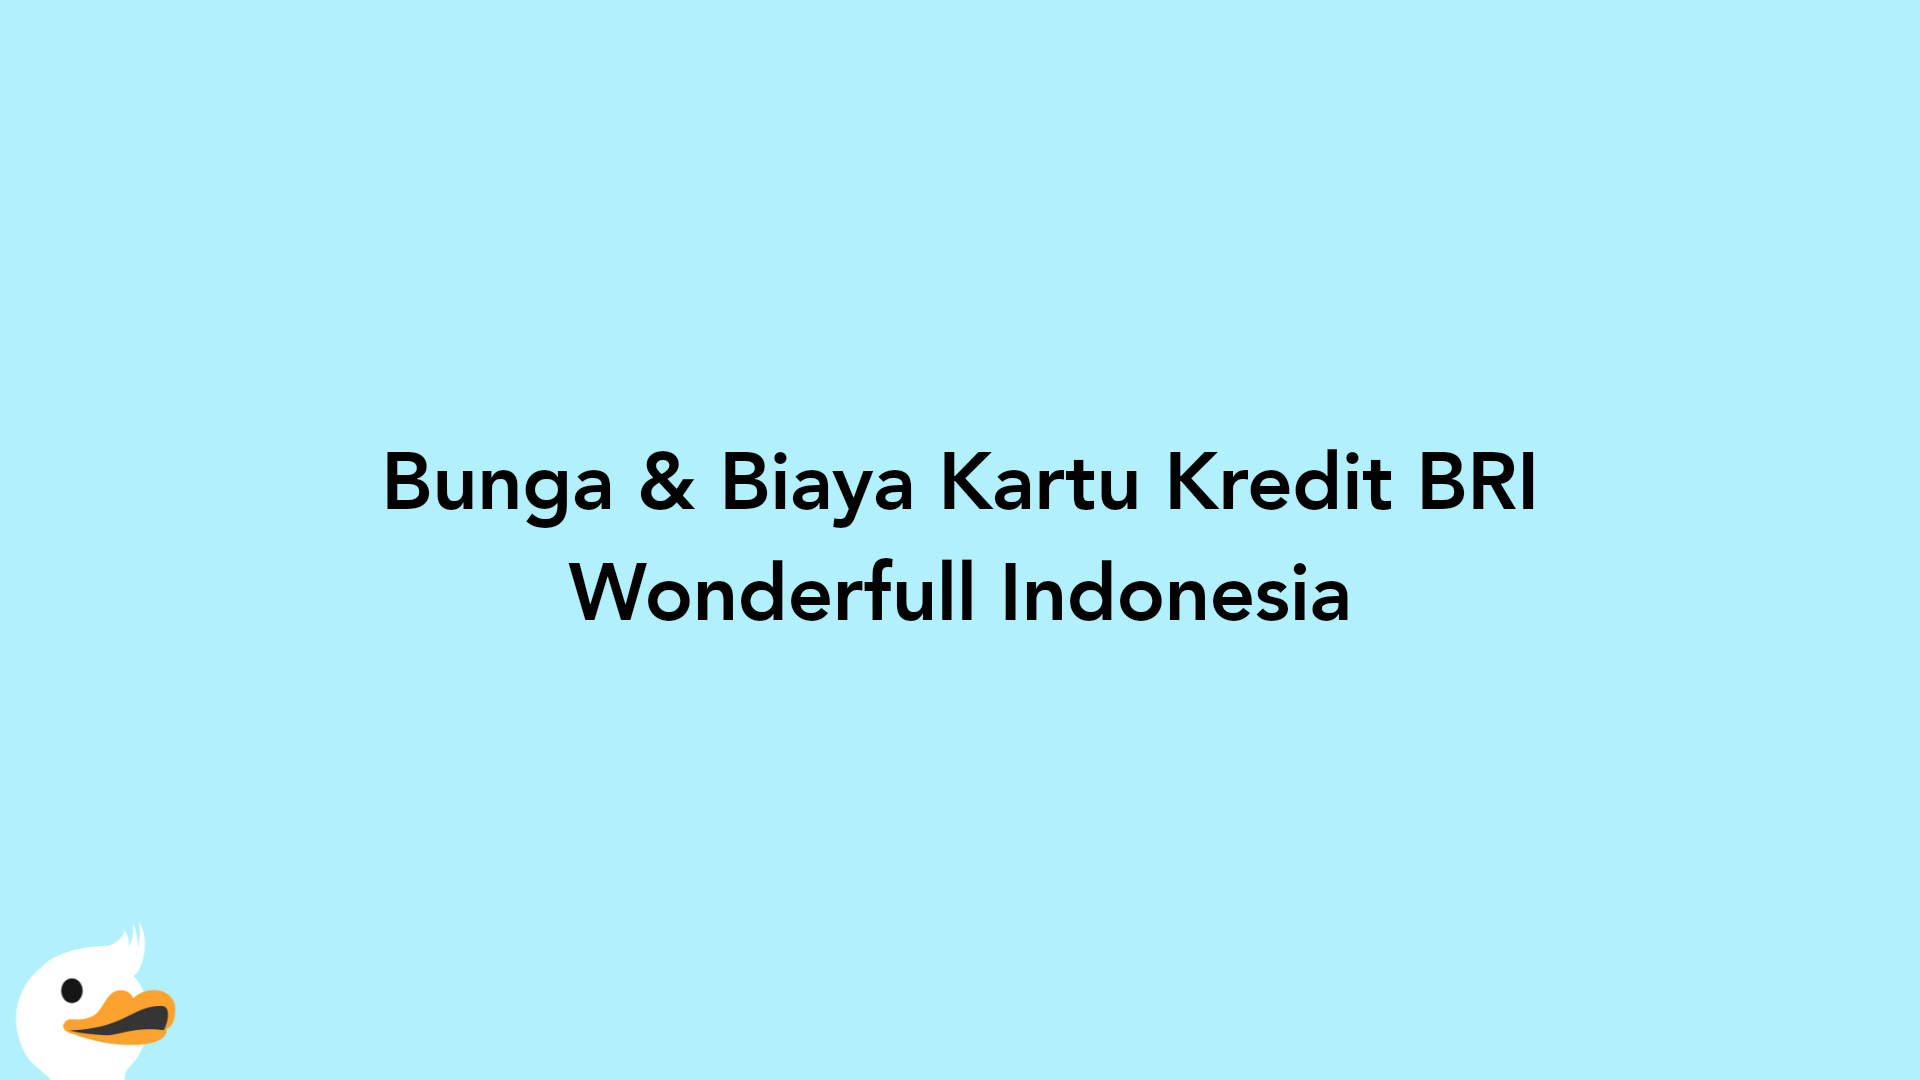 Bunga & Biaya Kartu Kredit BRI Wonderfull Indonesia